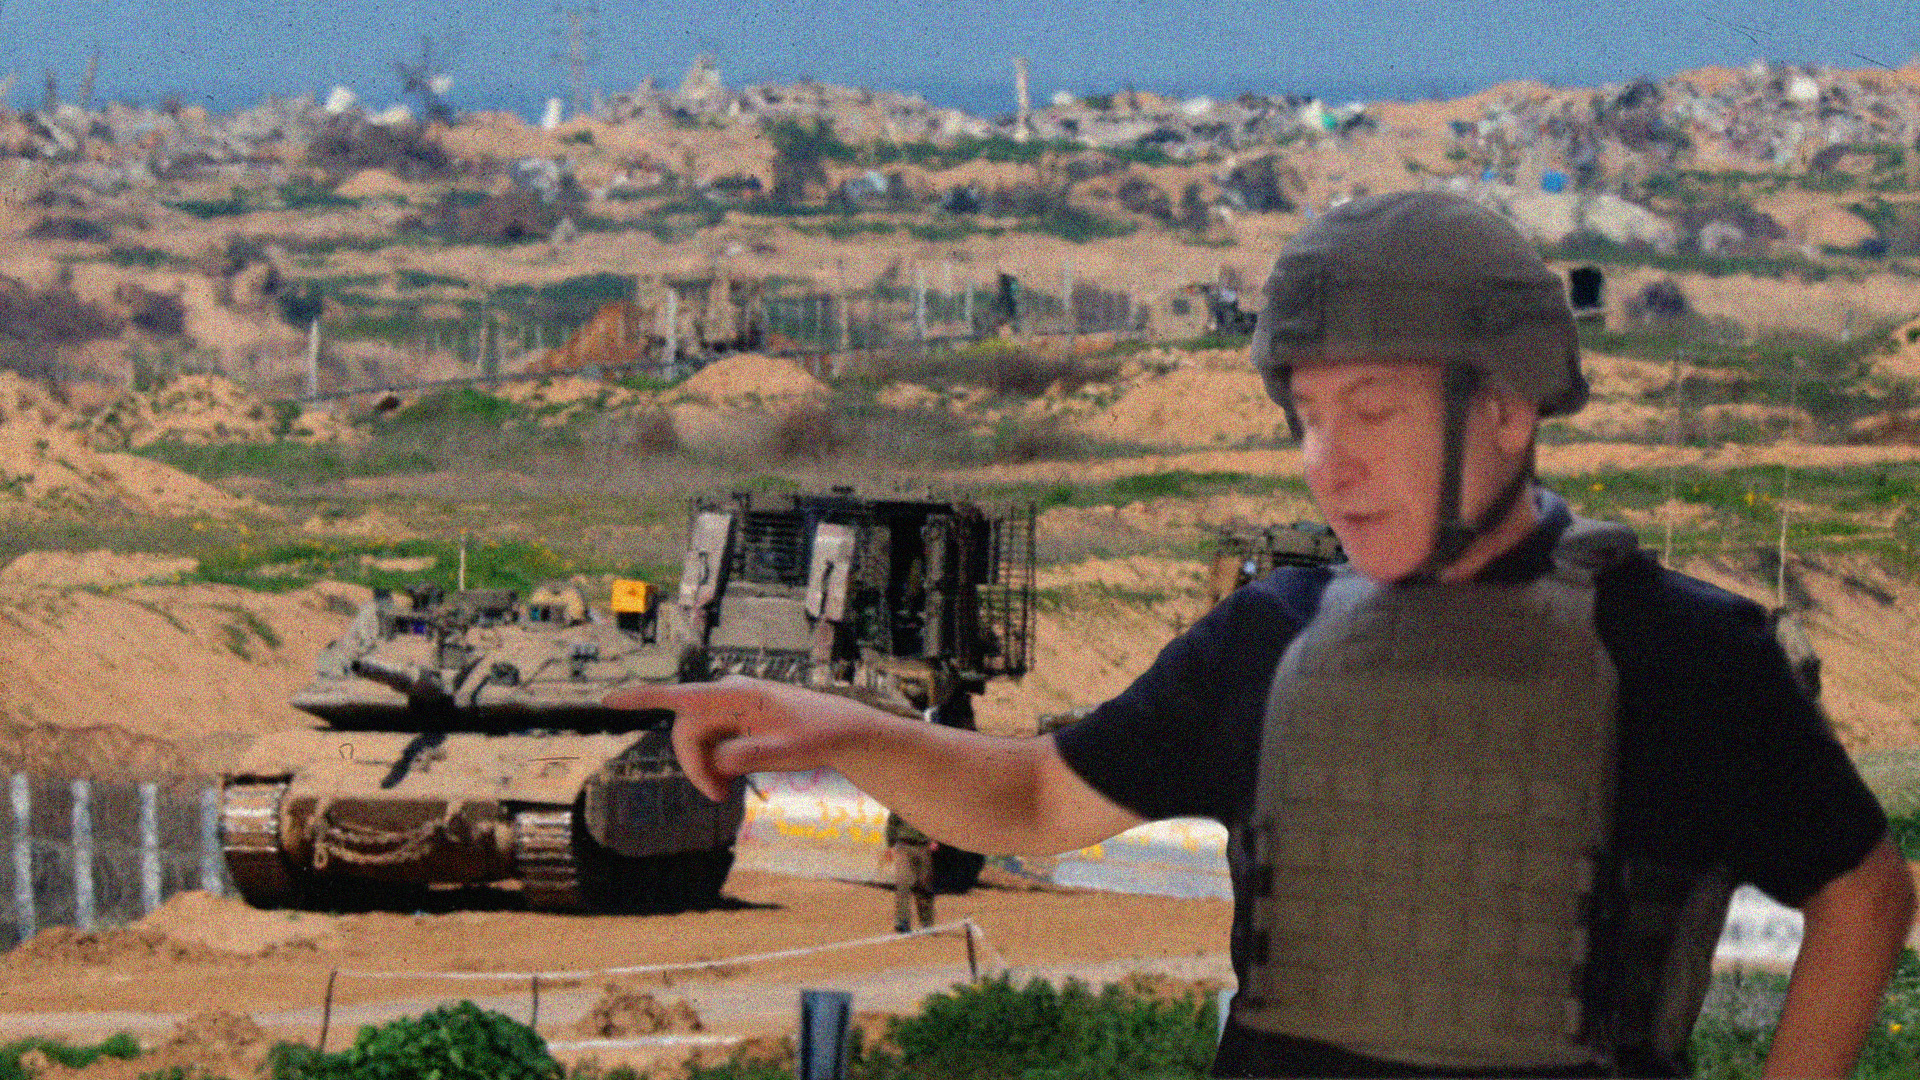  صورة إسرائيل تدعو لاستمرار النظر إلى العصفورة في رفح ريثما تنهي ديكور مواقعها العسكرية الجديدة في باقي القطاع